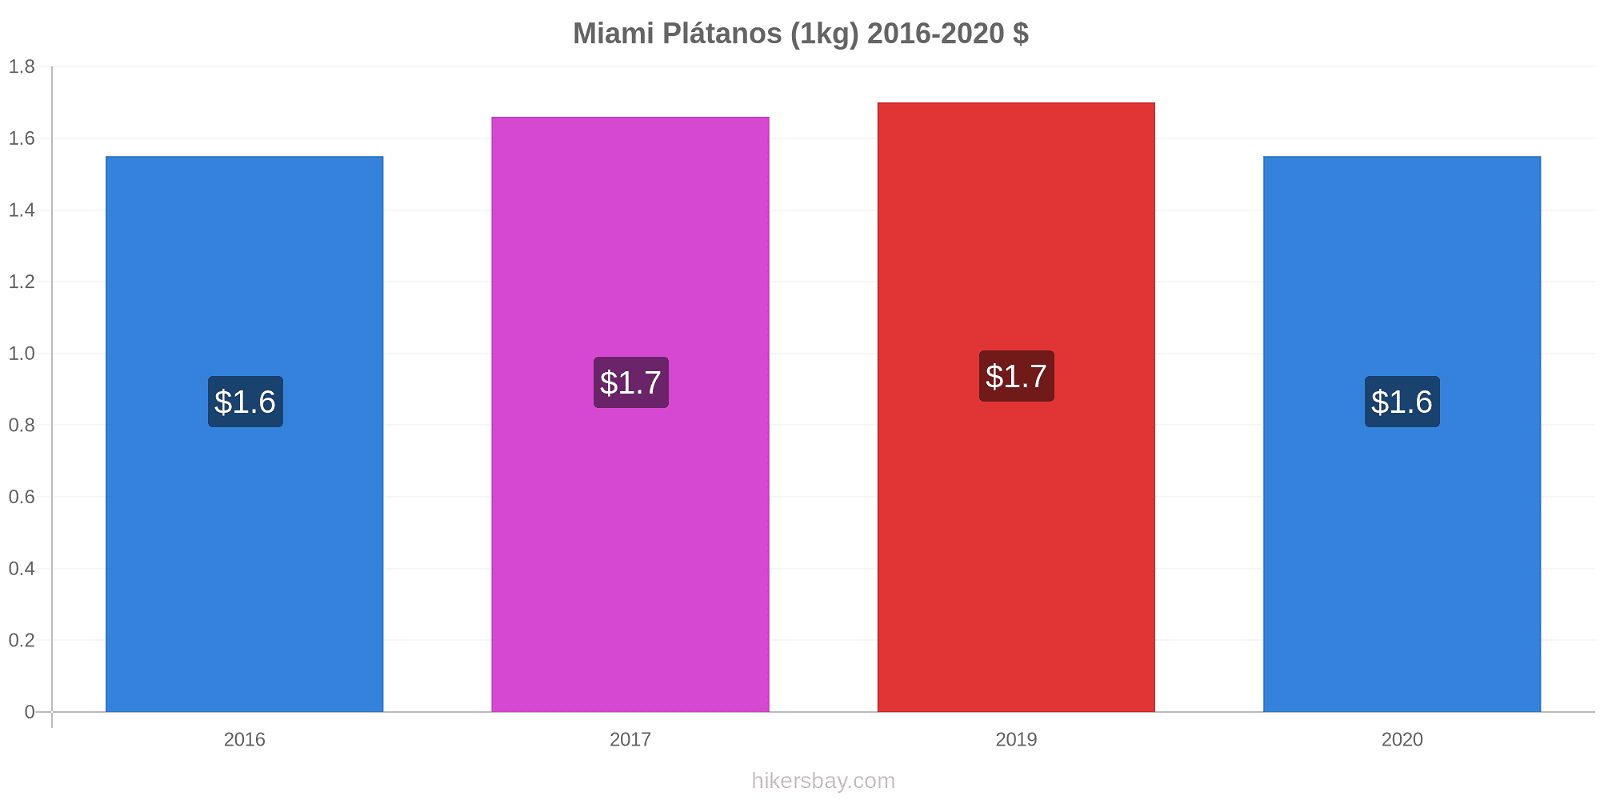 Miami cambios de precios Plátano (1kg) hikersbay.com